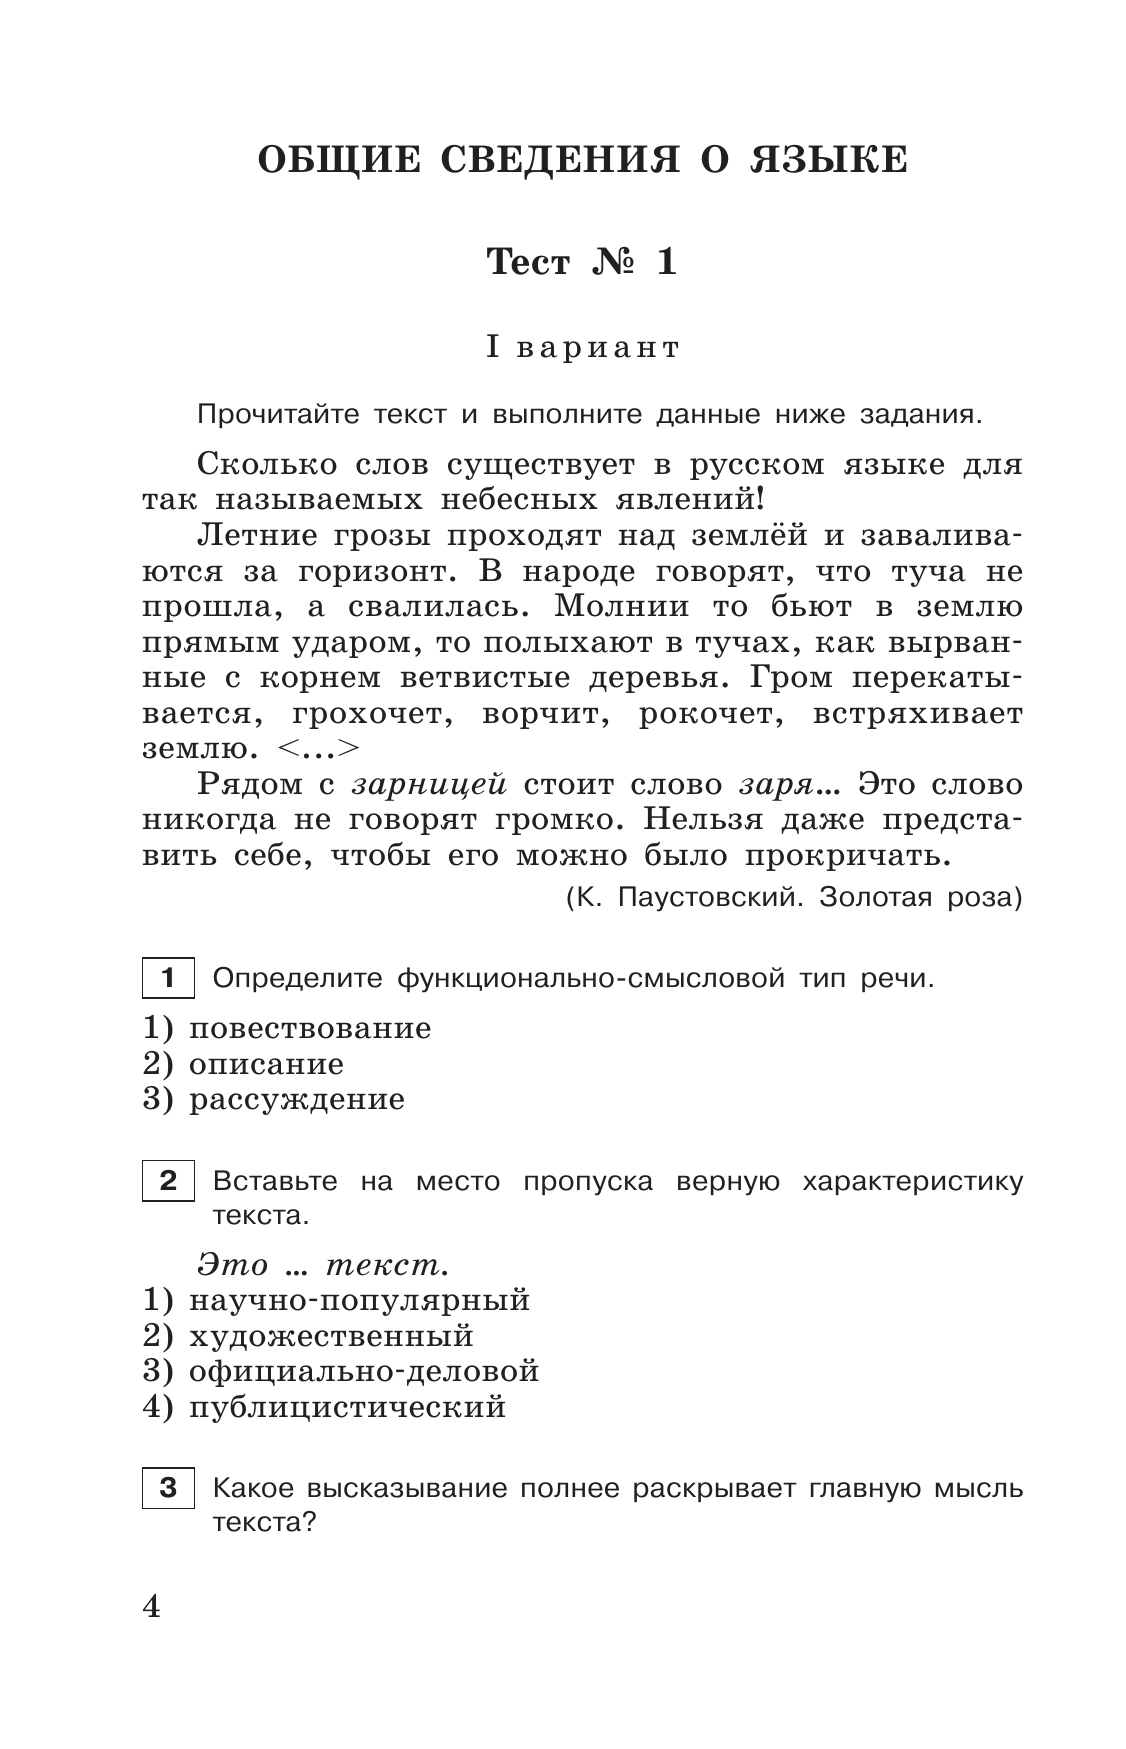 Тестовые задания по русскому языку. 6 класс. 3